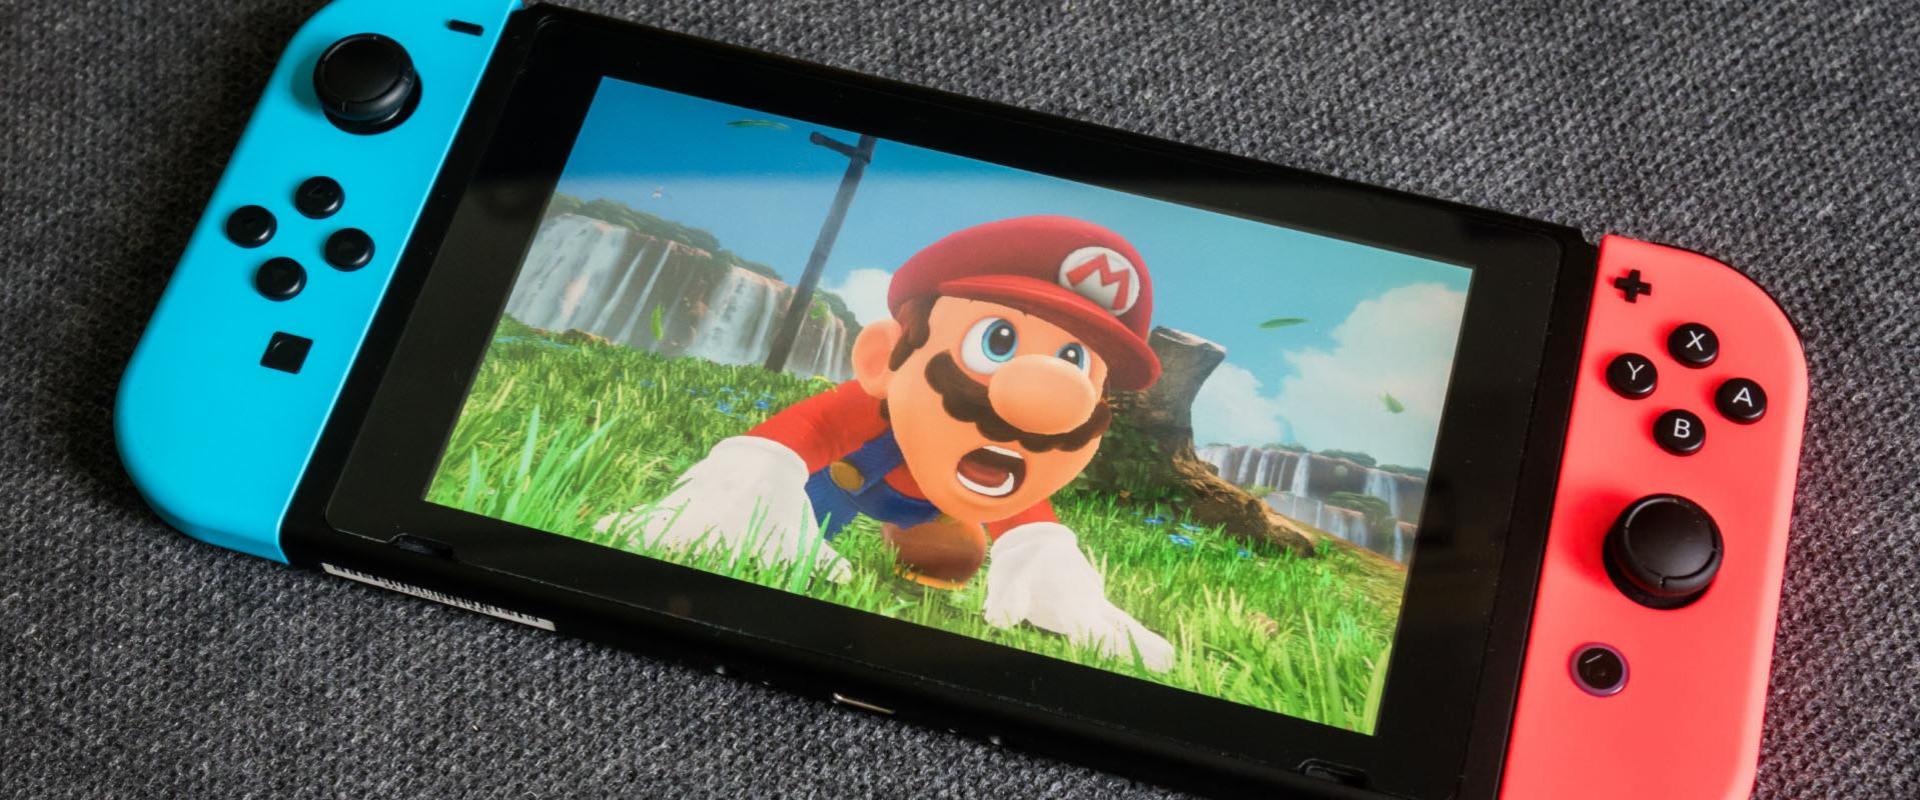 Készítsétek a zsepiket, mert késik a Nintendo Switch 2 megjelenése